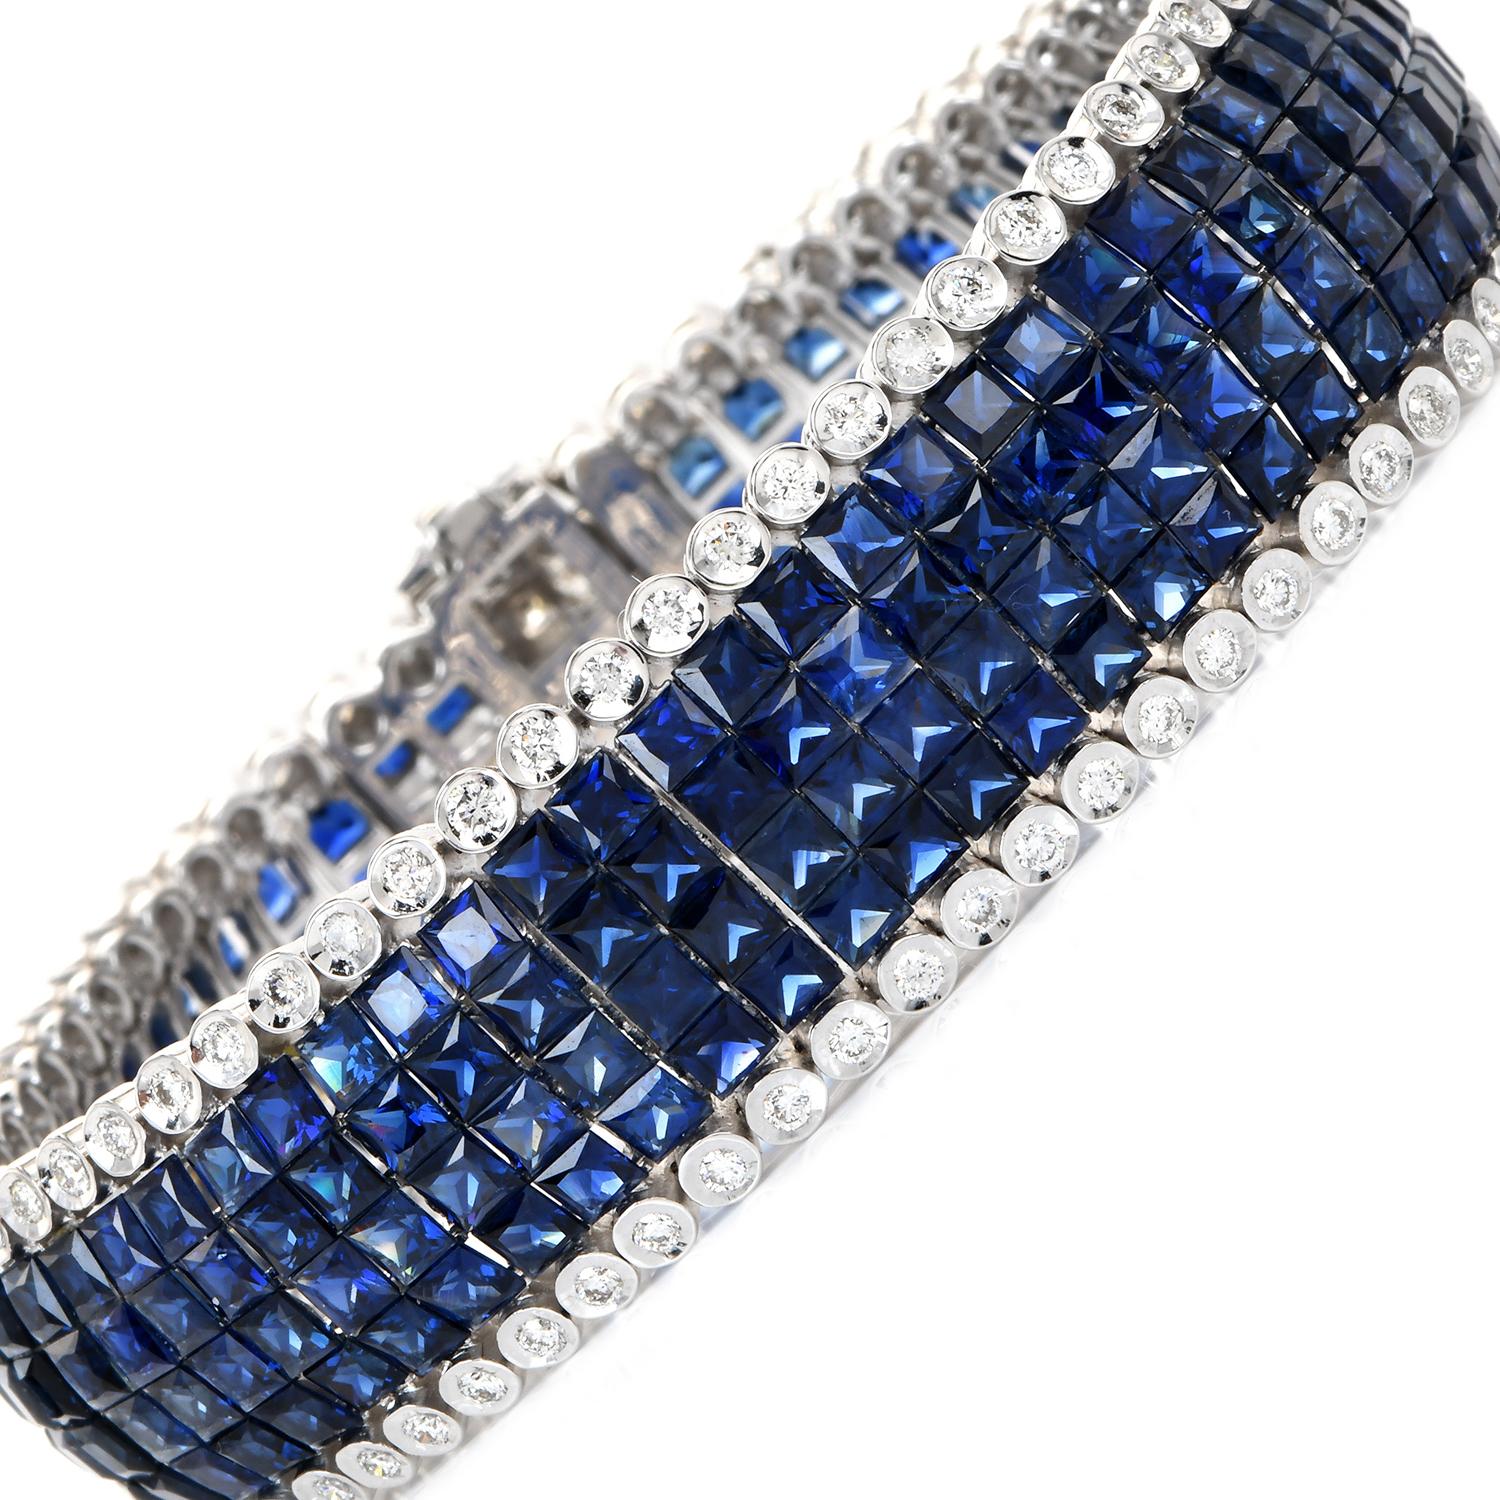 Ce bracelet de propriété est composé d'un bracelet flexible de 4 rangs de saphirs véritables calibrés, bordés de diamants ronds. Ce bracelet est réalisé en or blanc 18 carats et met en valeur des saphirs bleus taillés en gradins, pesant